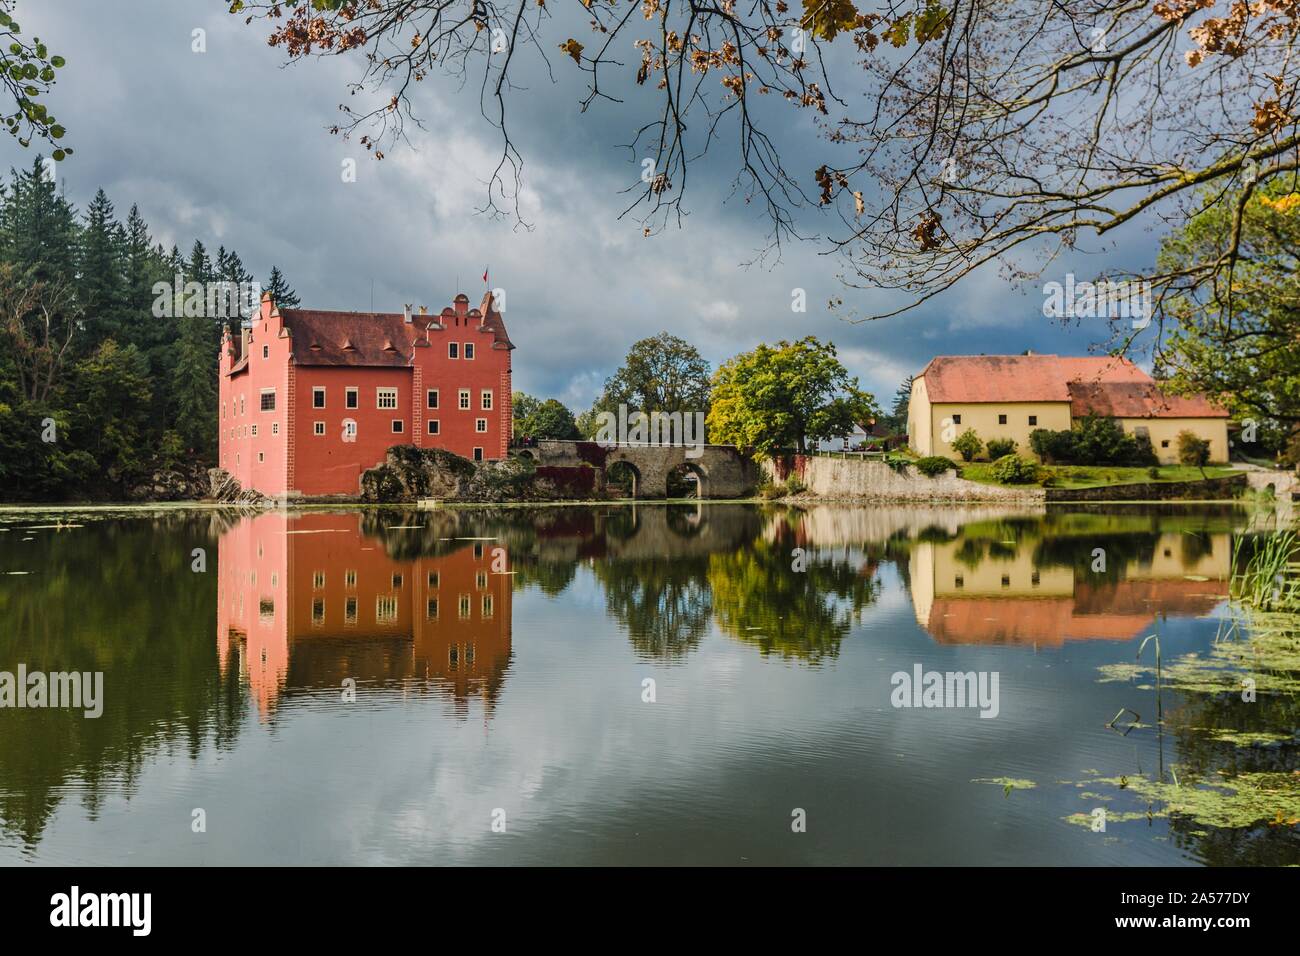 Cervena Lhota, Repubblica Ceca - 28 Settembre 2019: vista del famoso castello rosso in piedi su una roccia al centro di un lago. Giornata di sole e cielo blu. Foto Stock